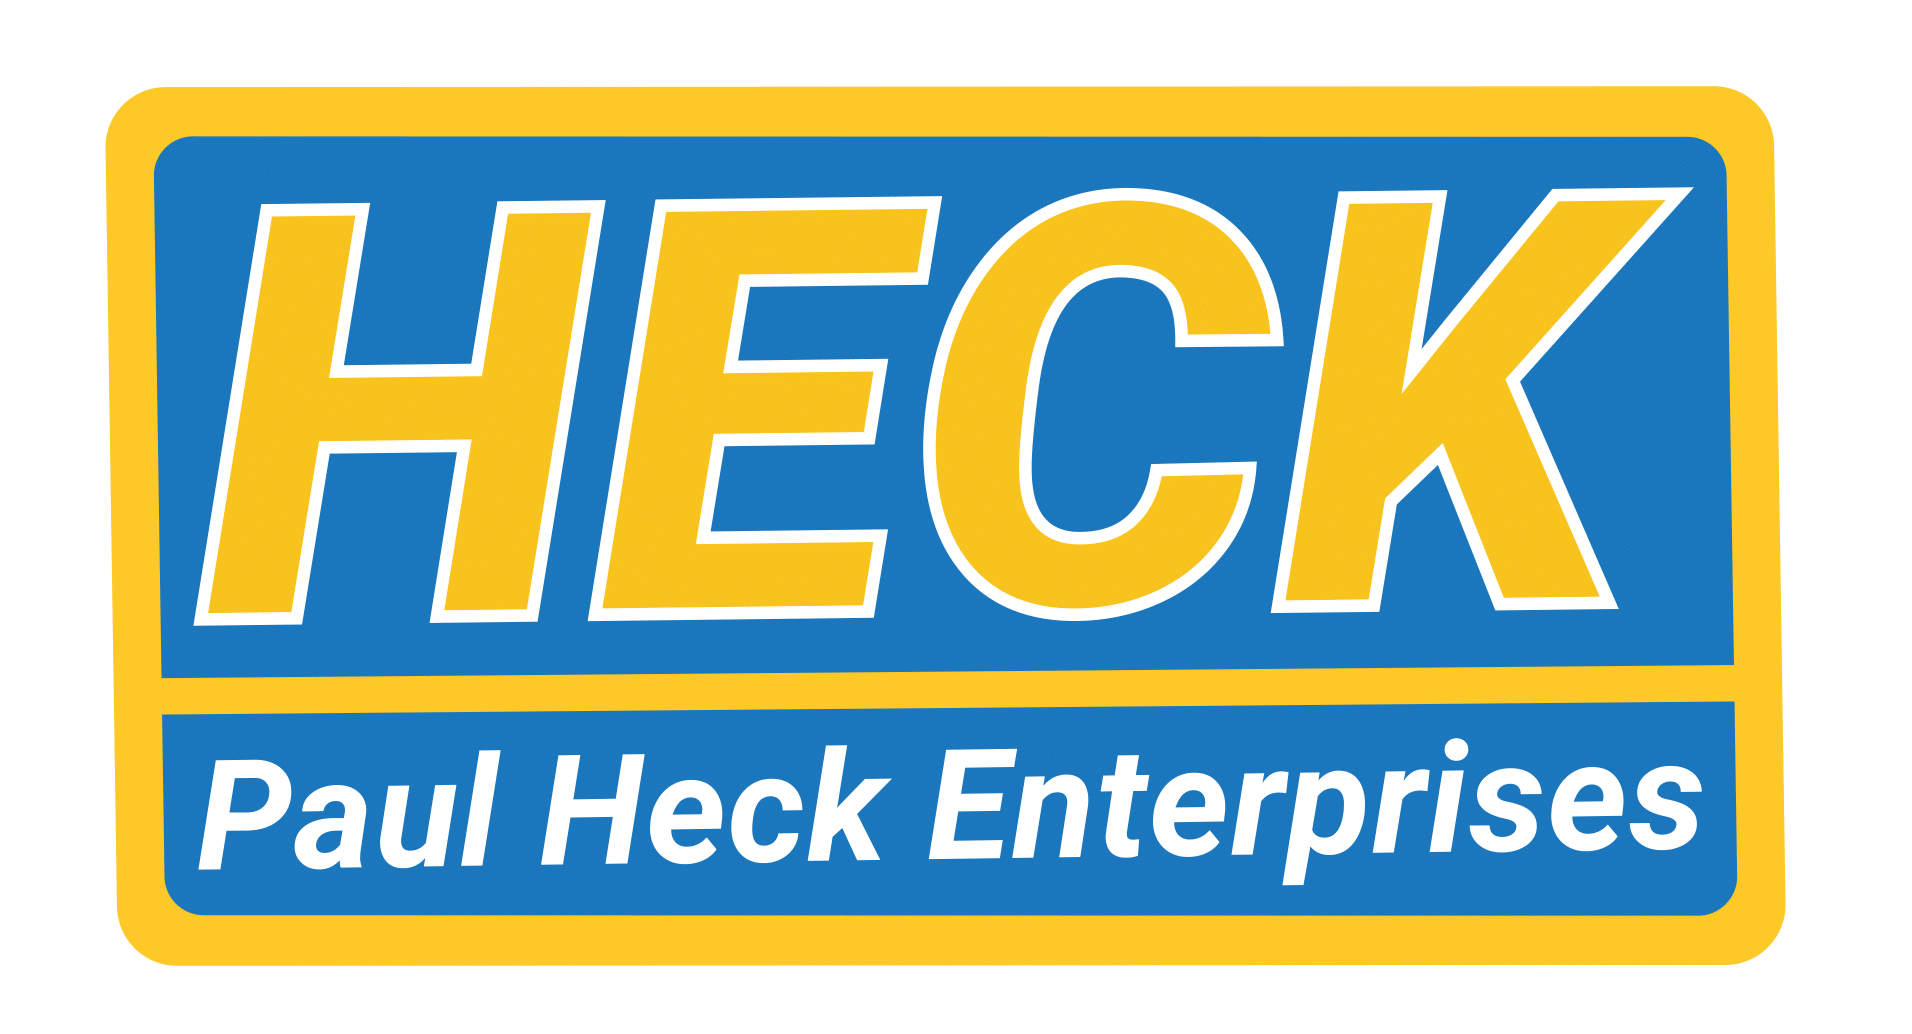 Paul Heck Enterprises